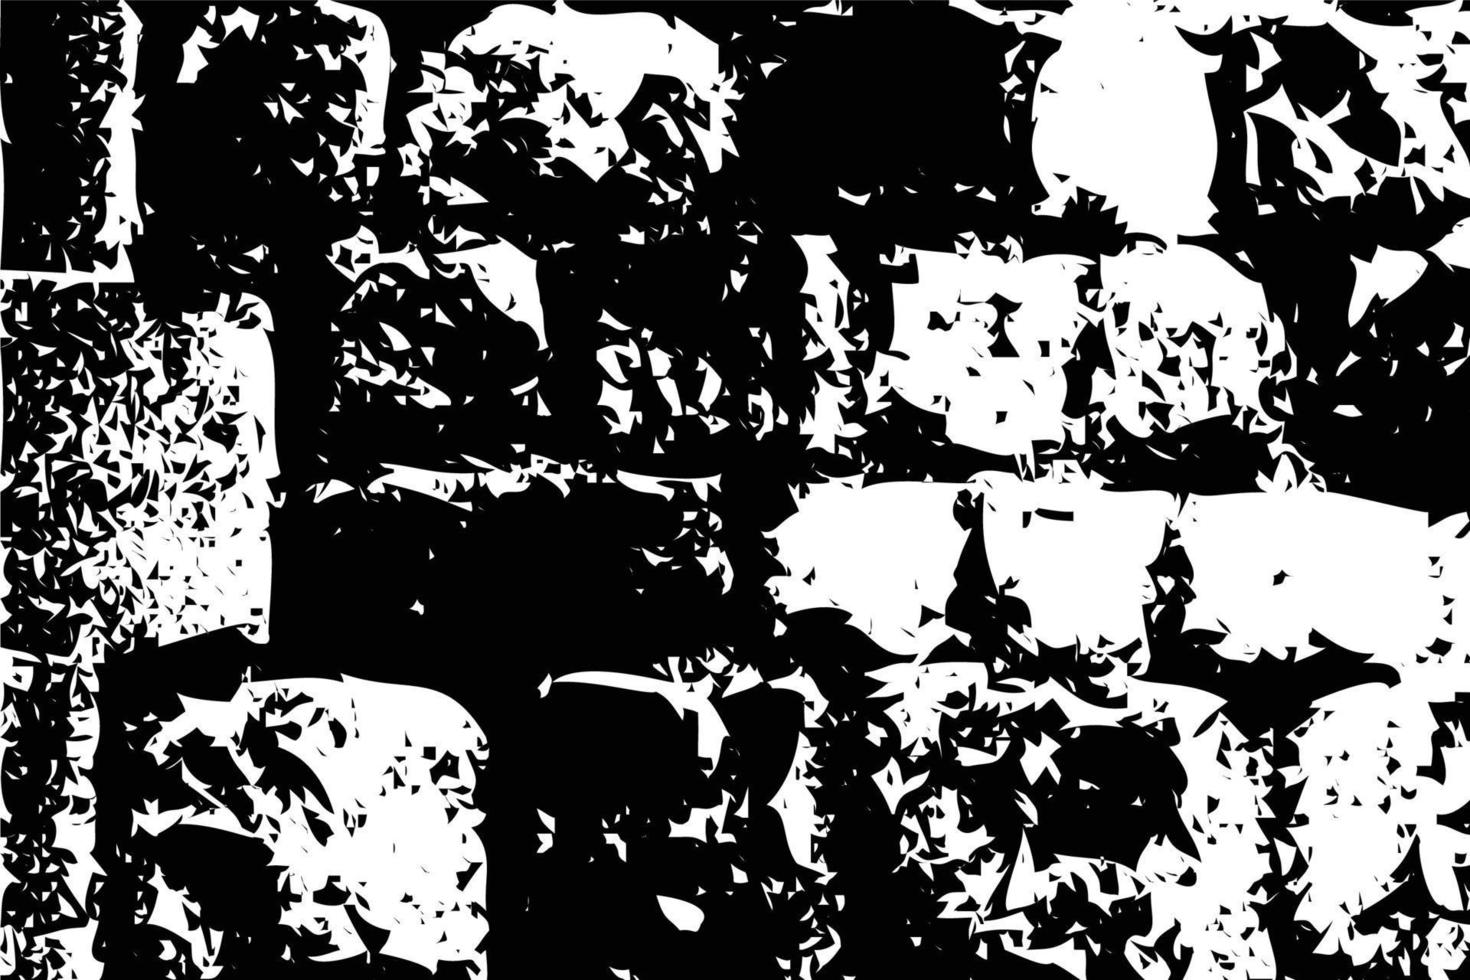 schwarz-weißes Backsteinmauer-Texturdesign für Vorlagendekoration. das designelement und der hintergrundtexturvektor mit dunklen farben. Nahaufnahme Grange-Effekt einer Backsteinmauer. dunkle Hintergrundtextur. vektor